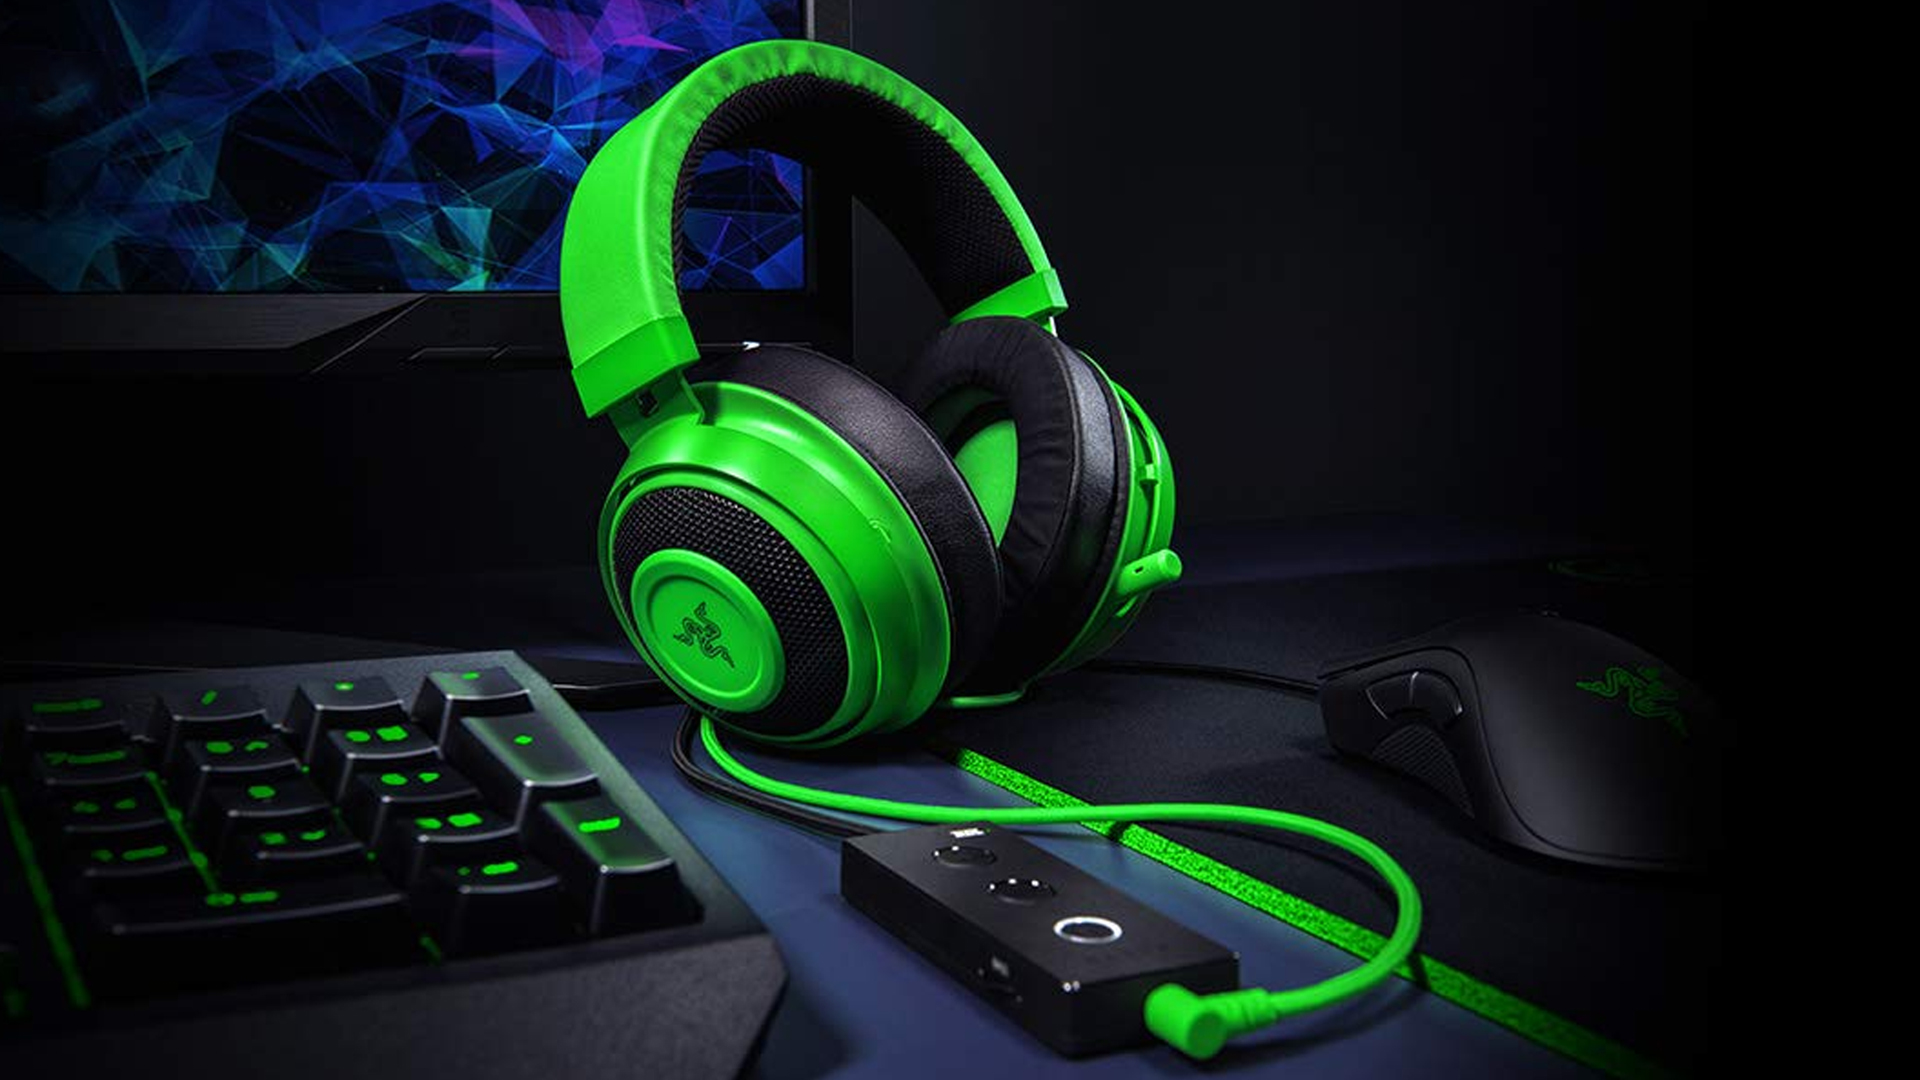 Save 47% on Razer's Kraken Tournament Edition gaming headset on Amazon